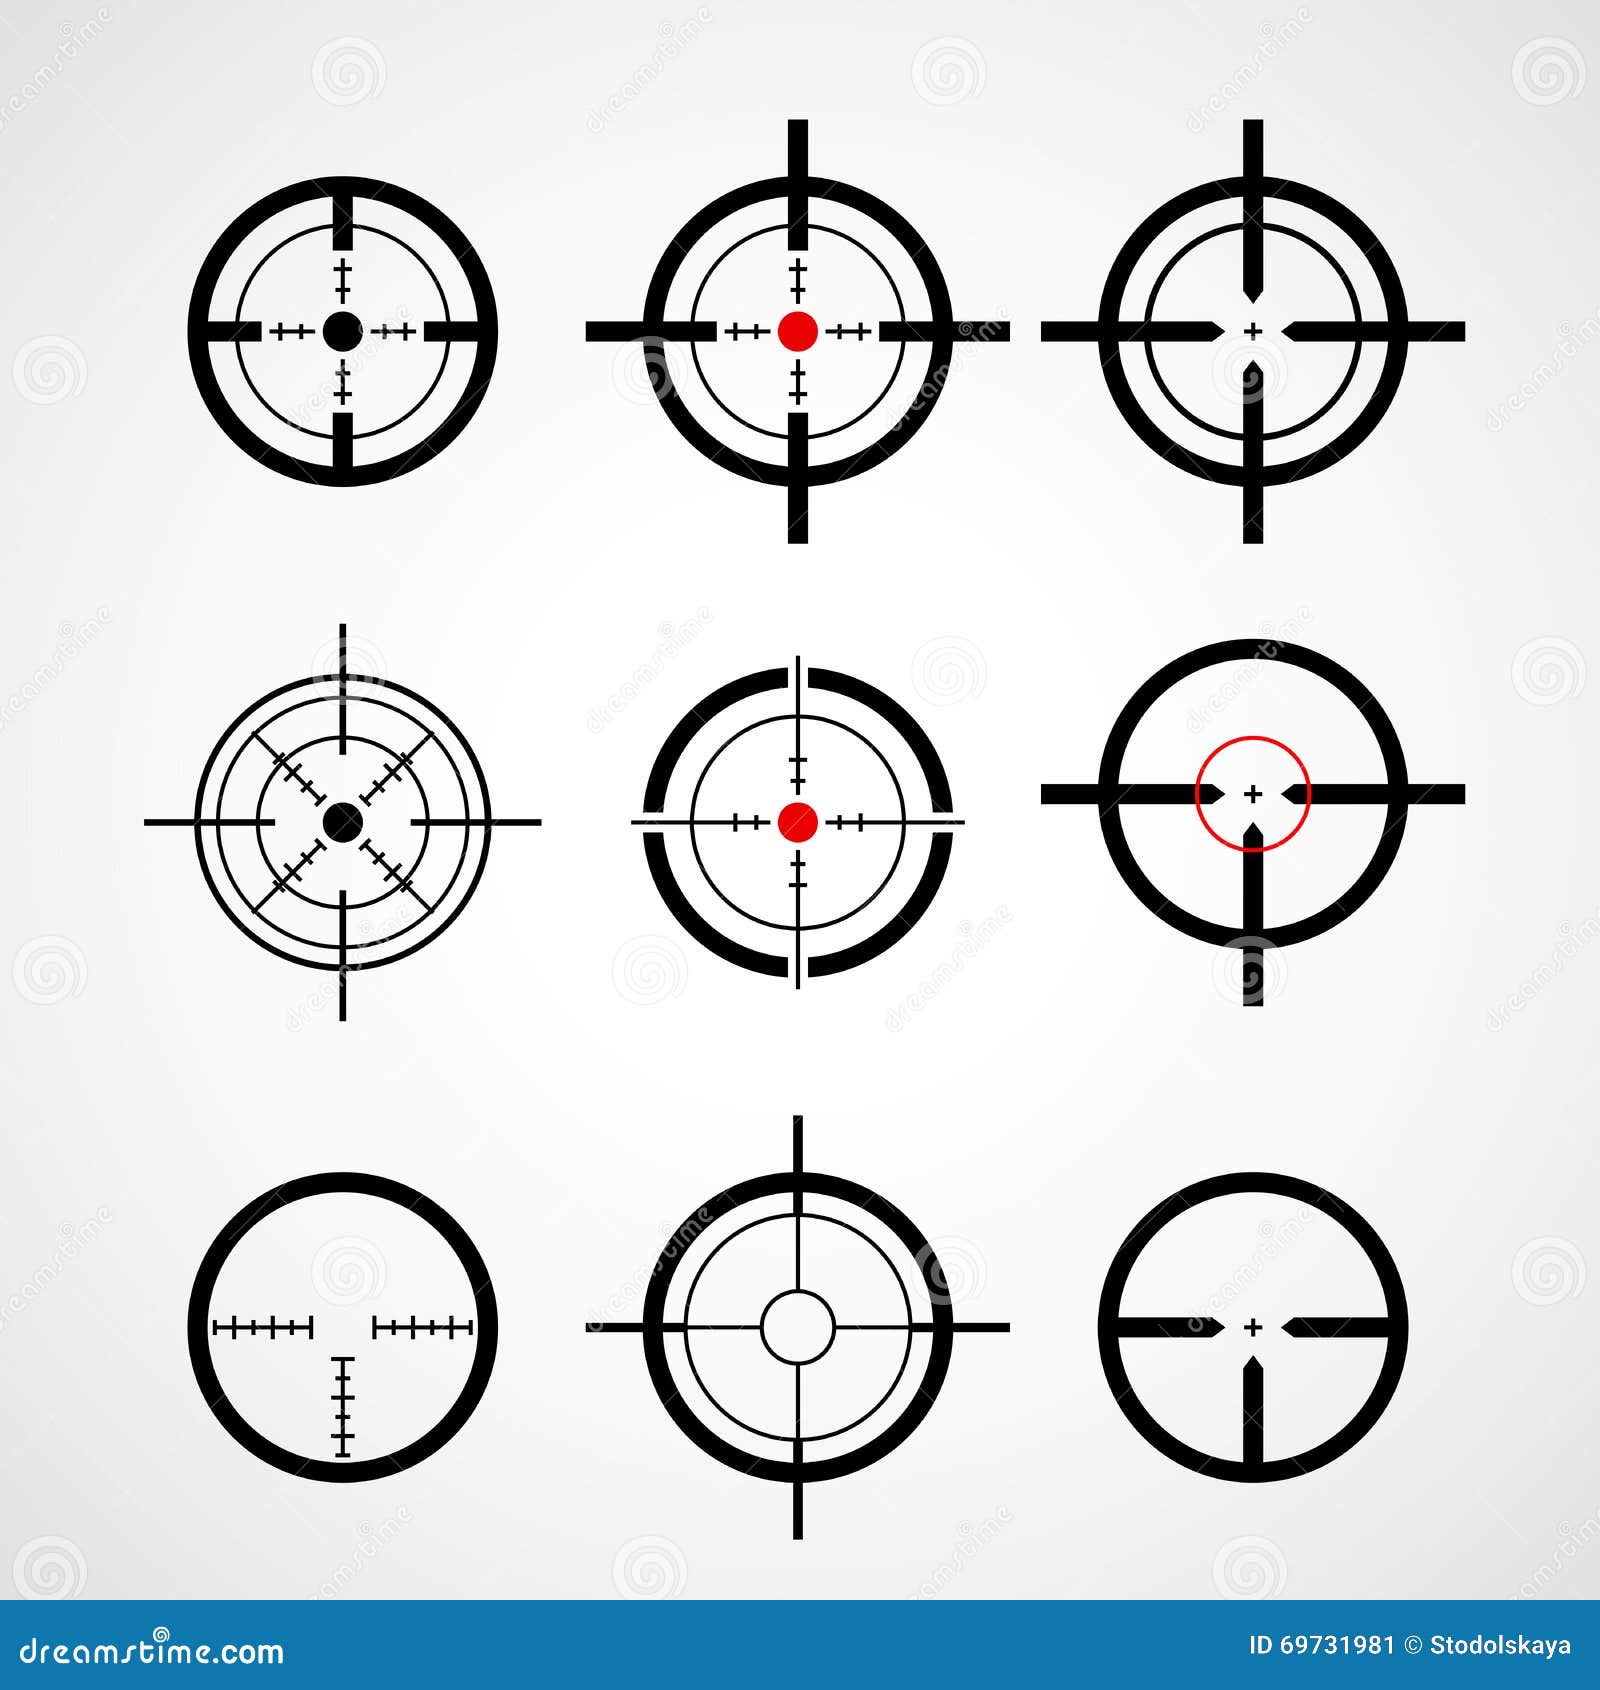 crosshair (gun sight), target icons